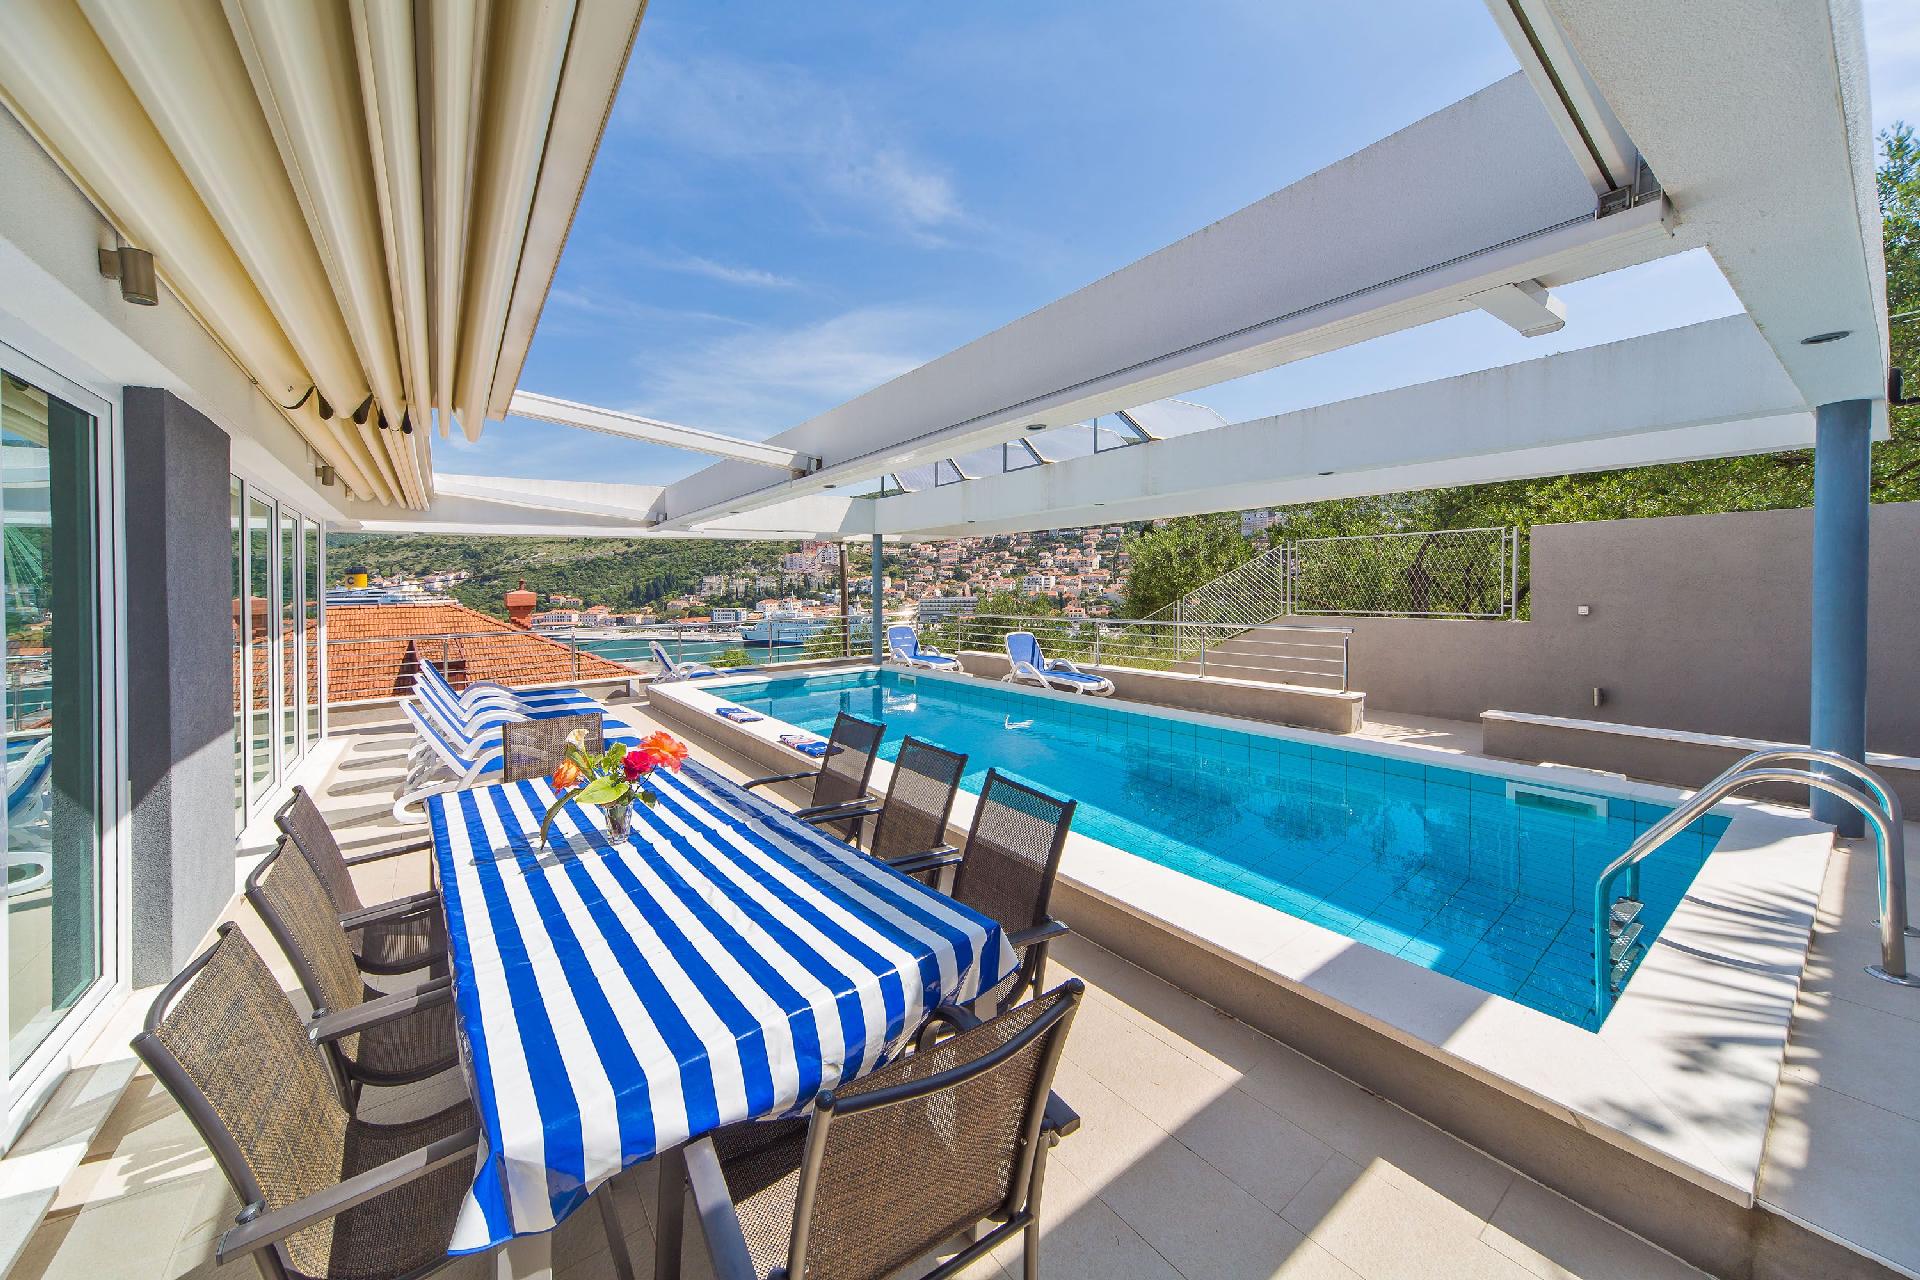 Luxuriöses Ferienhaus mit privatem Pool und M Ferienhaus in Kroatien